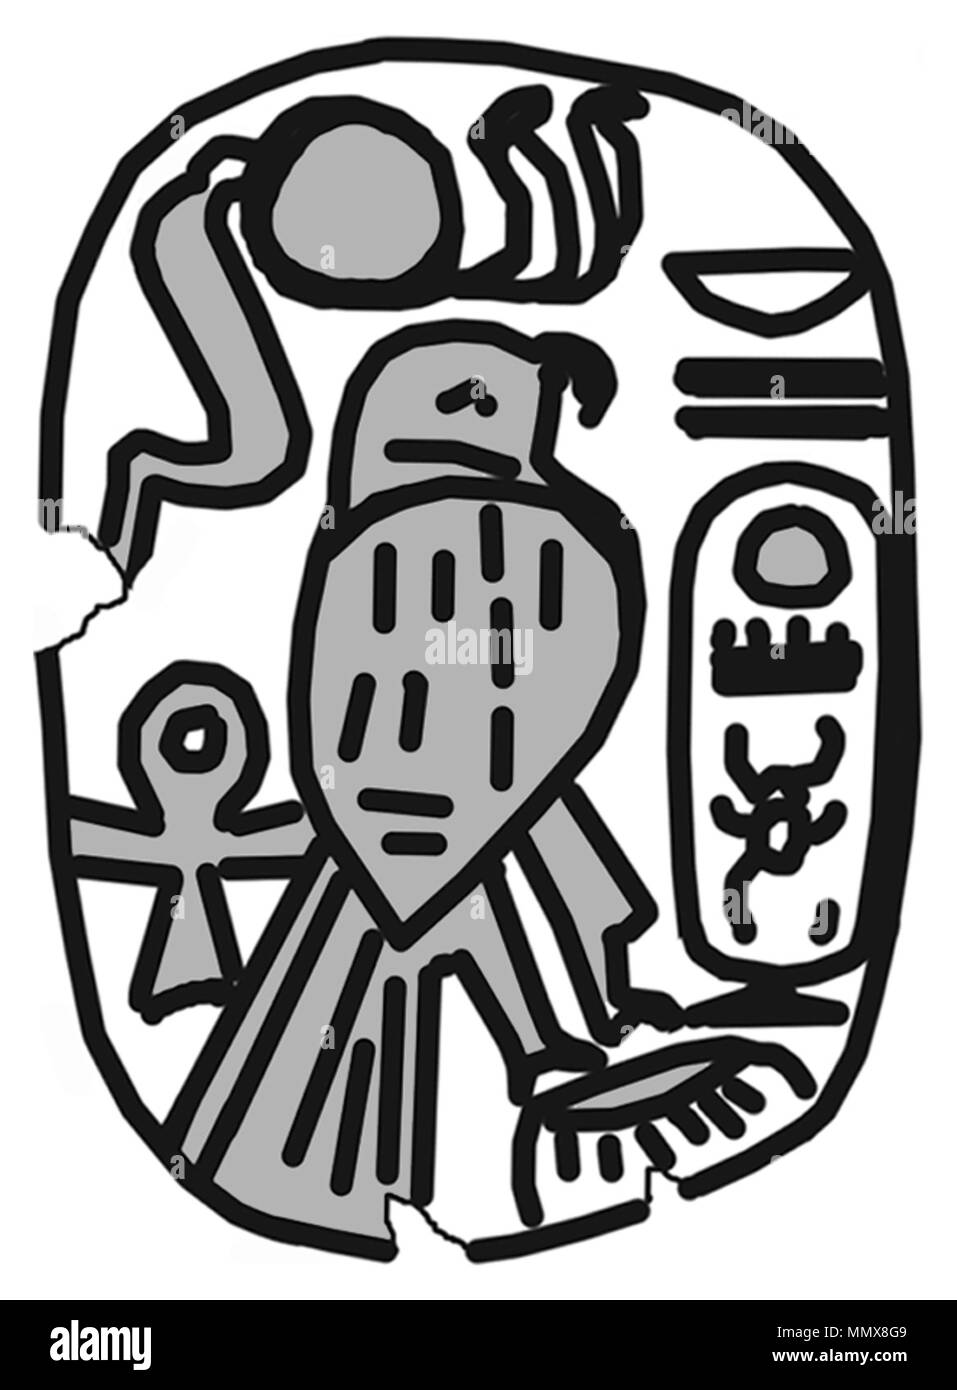 42.1263 Anonimo (egiziano). "Placca con il cartiglio di Thutmosis III (1479-1425 a.C.),' 1479-1425 A.C. di beige chiaro in steatite con verde-blu smalto. Walters Art Museum (42.1263): Museo acquisto, 1942. - Egiziano placca con il cartiglio di Thutmosis III (1479-1425 a.C.) - Walters 421263 - impressione Foto Stock